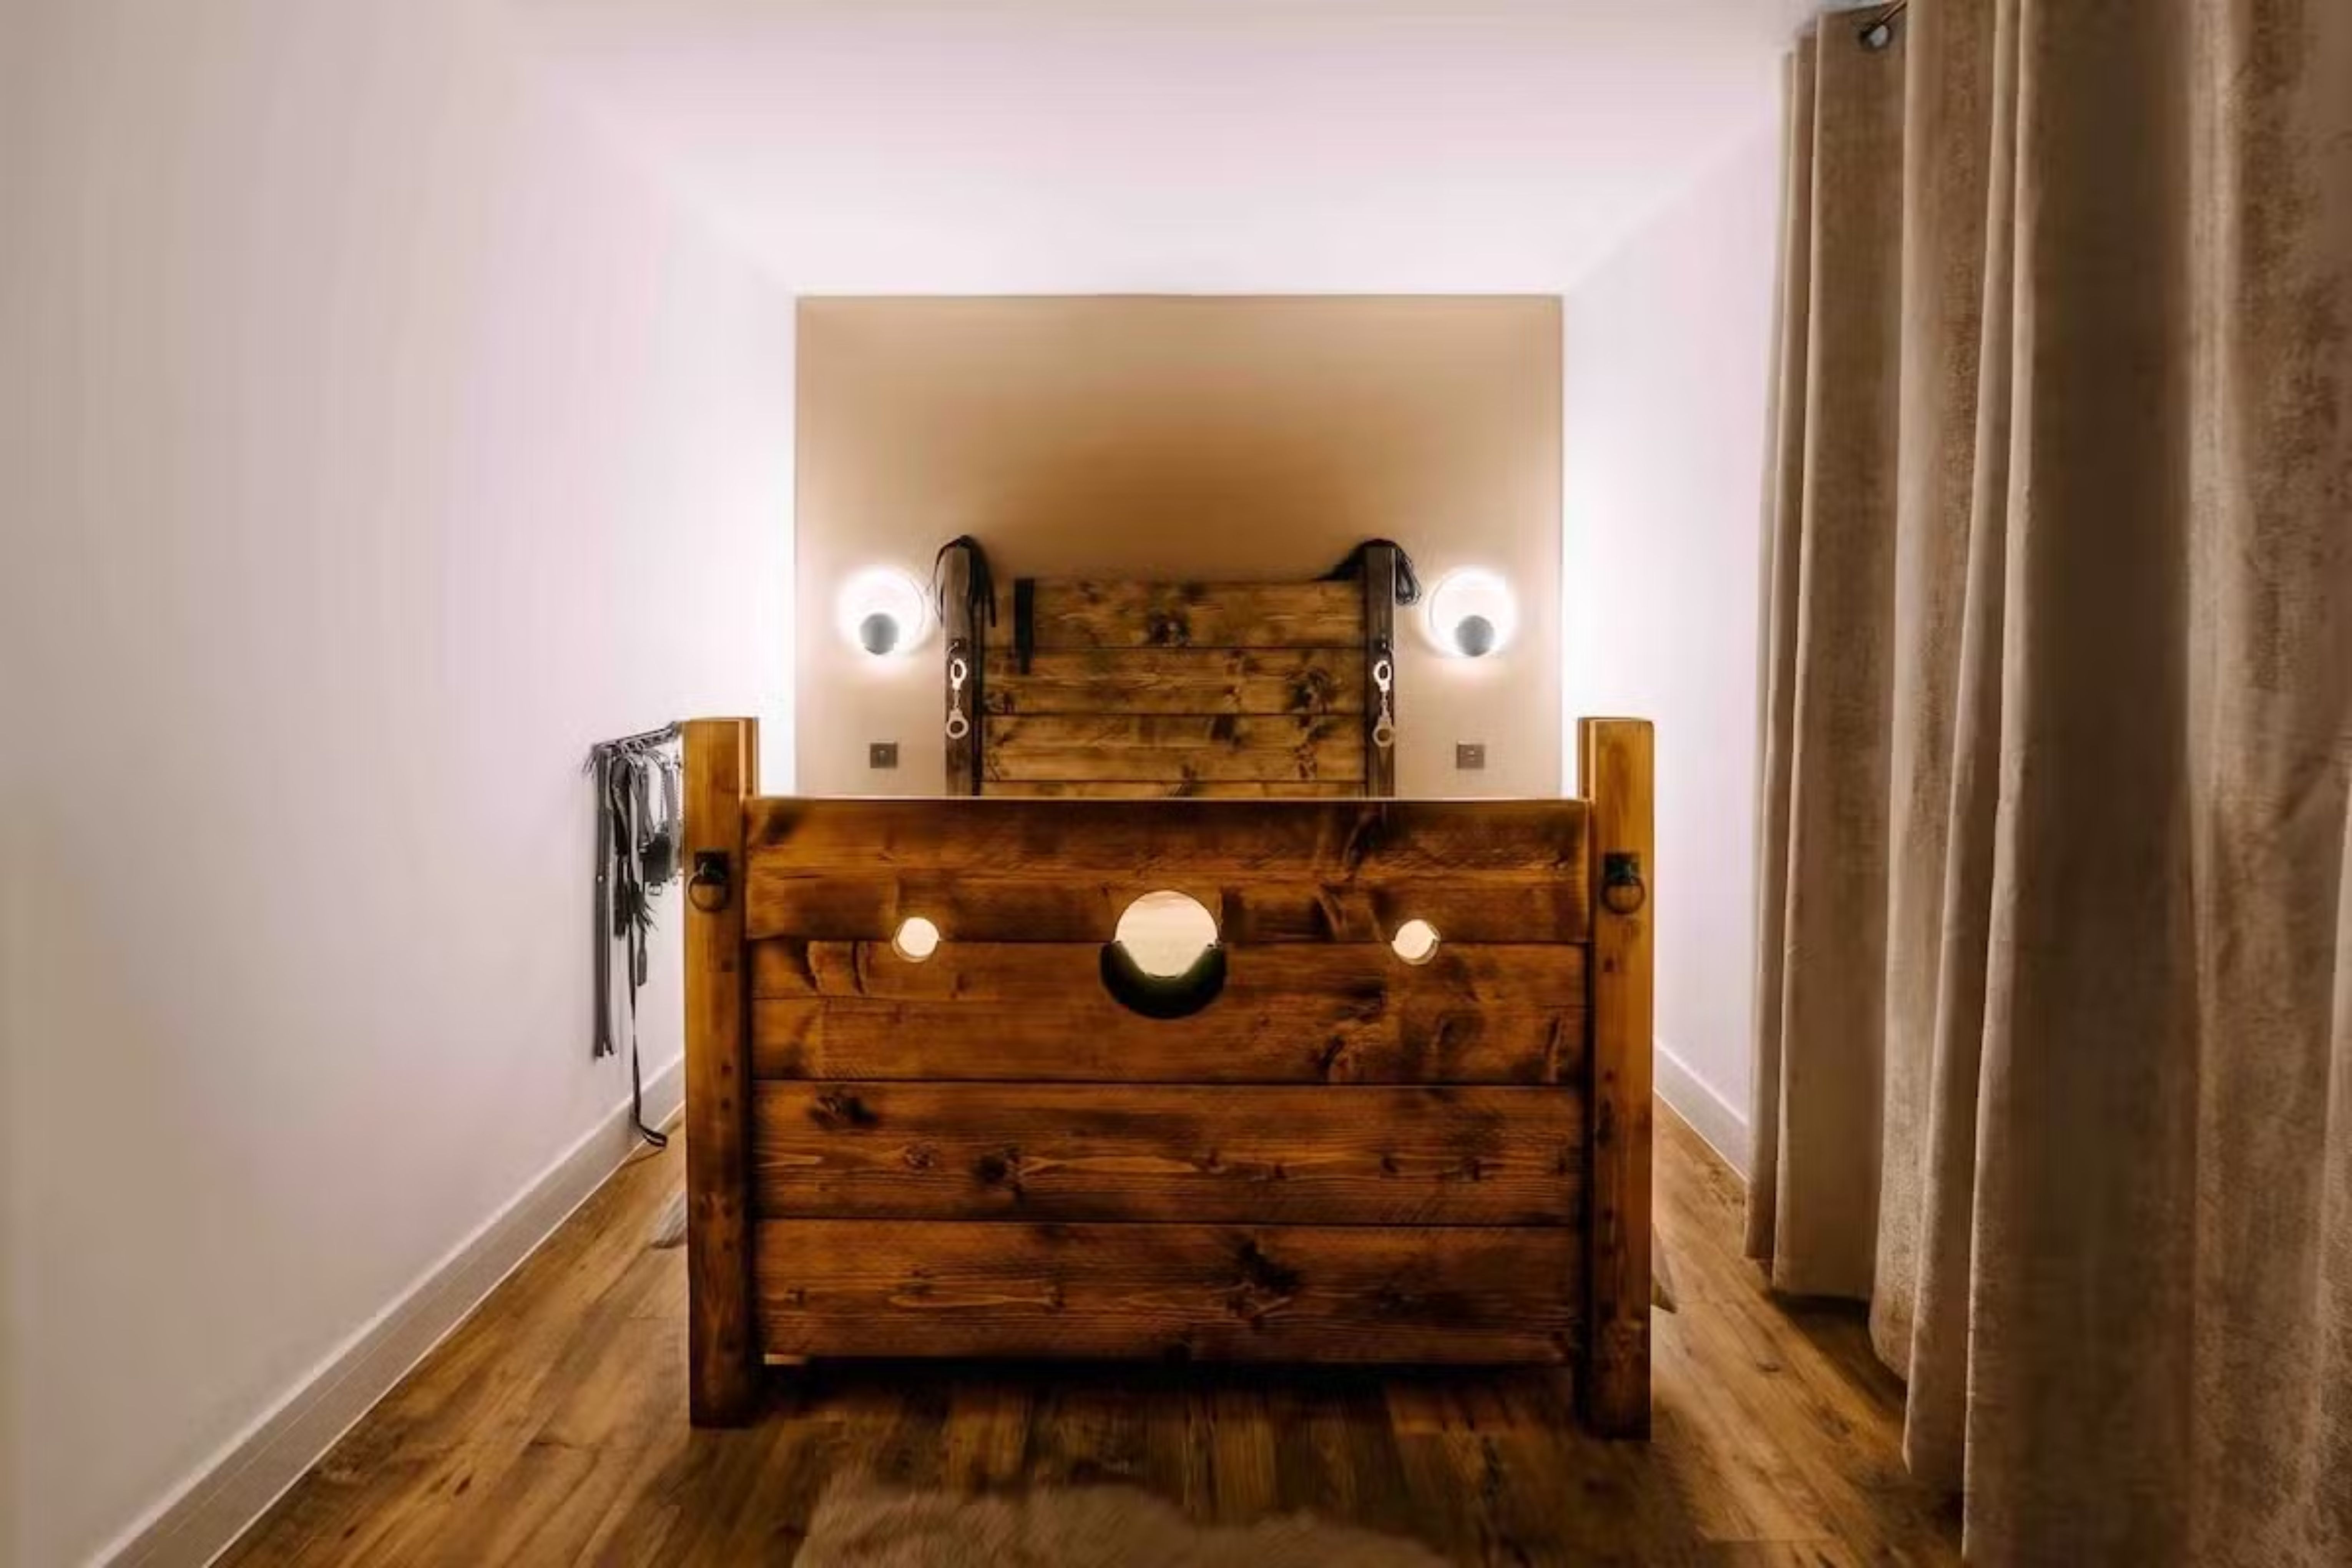 Descubra a Casa Amor em Southampton, o refúgio perfeito para casais que buscam realizar suas fantasias mais ousadas Reprodução/Airbnb